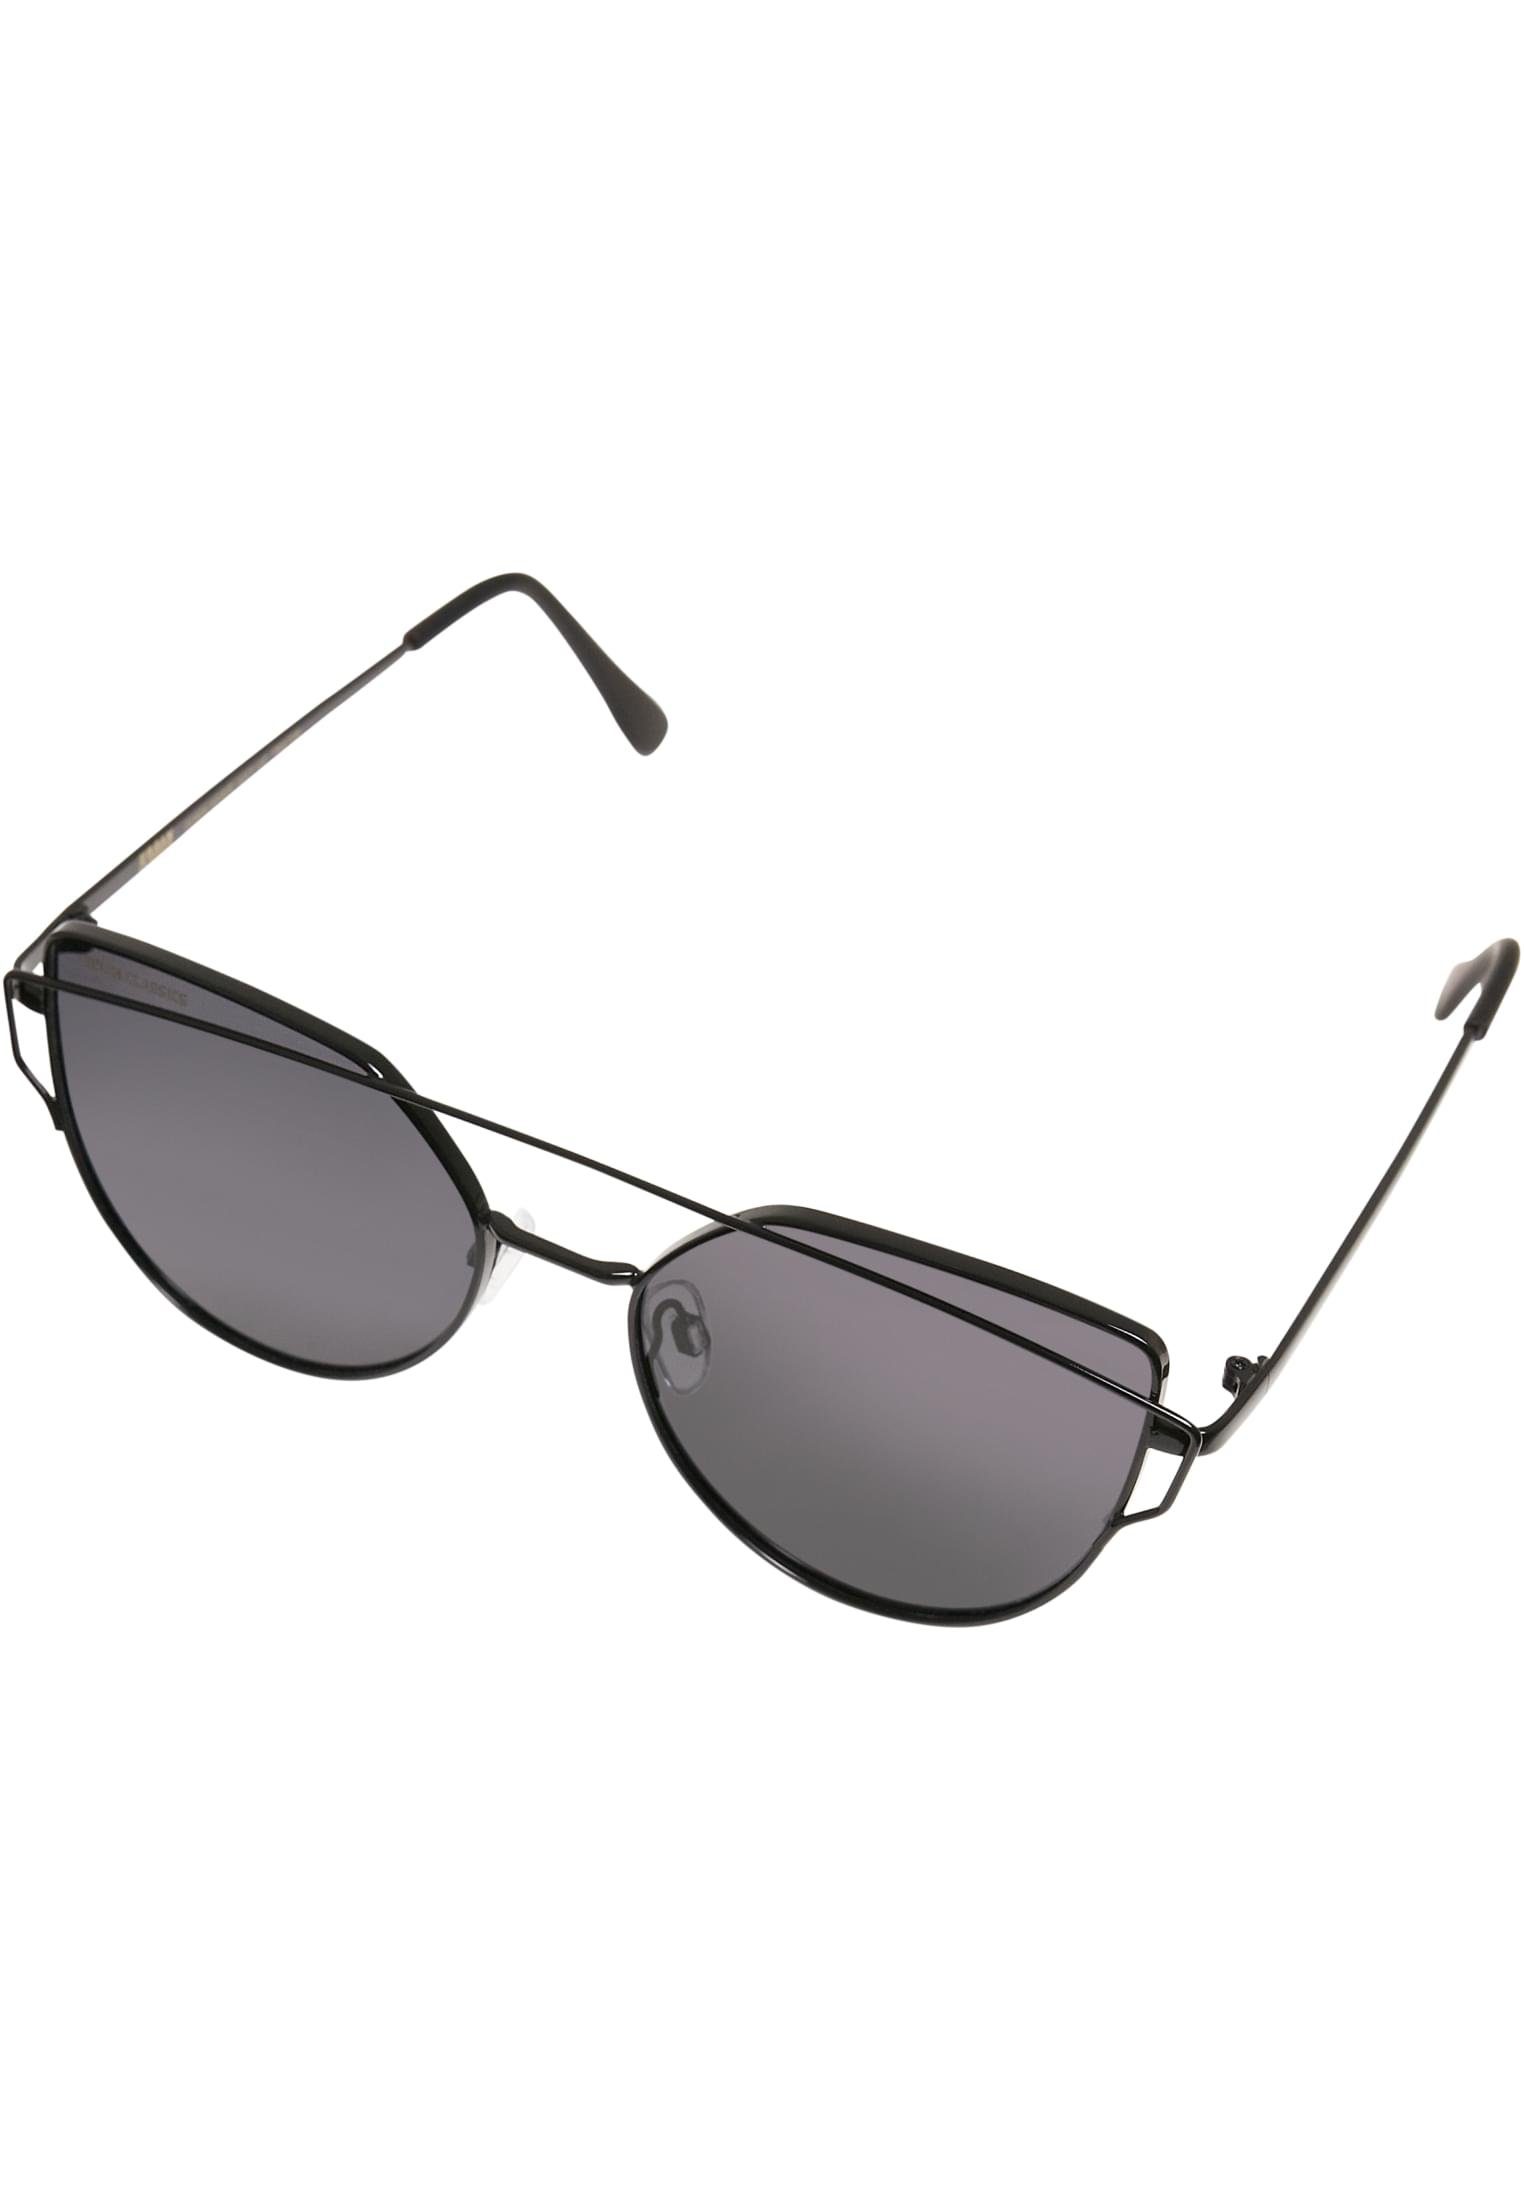 URBAN CLASSICS Sonnenbrille Accessoires Sunglasses July UC black | Sonnenbrillen